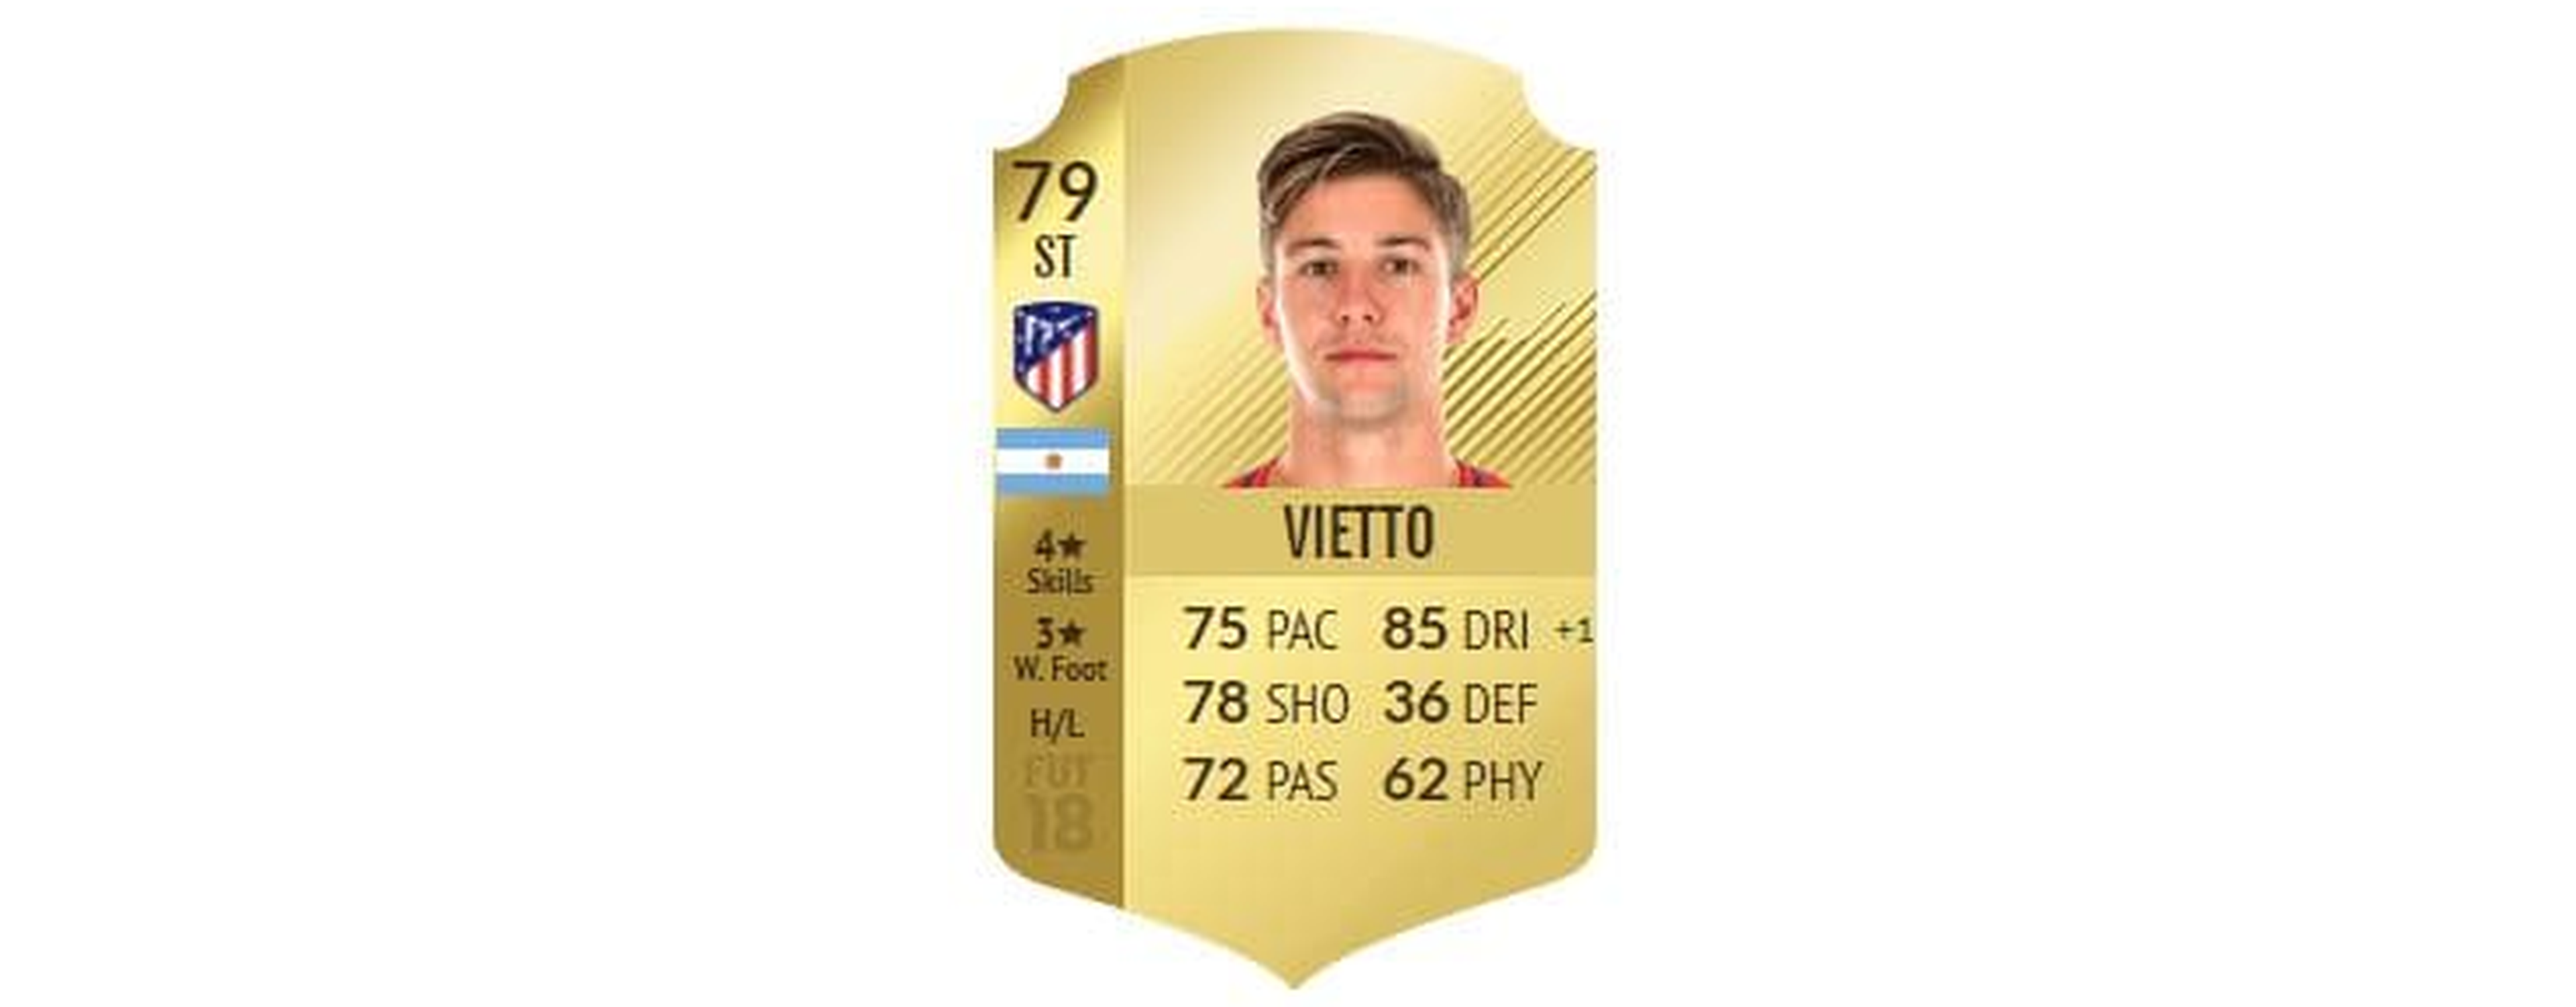 FIFA 18 - Vietto